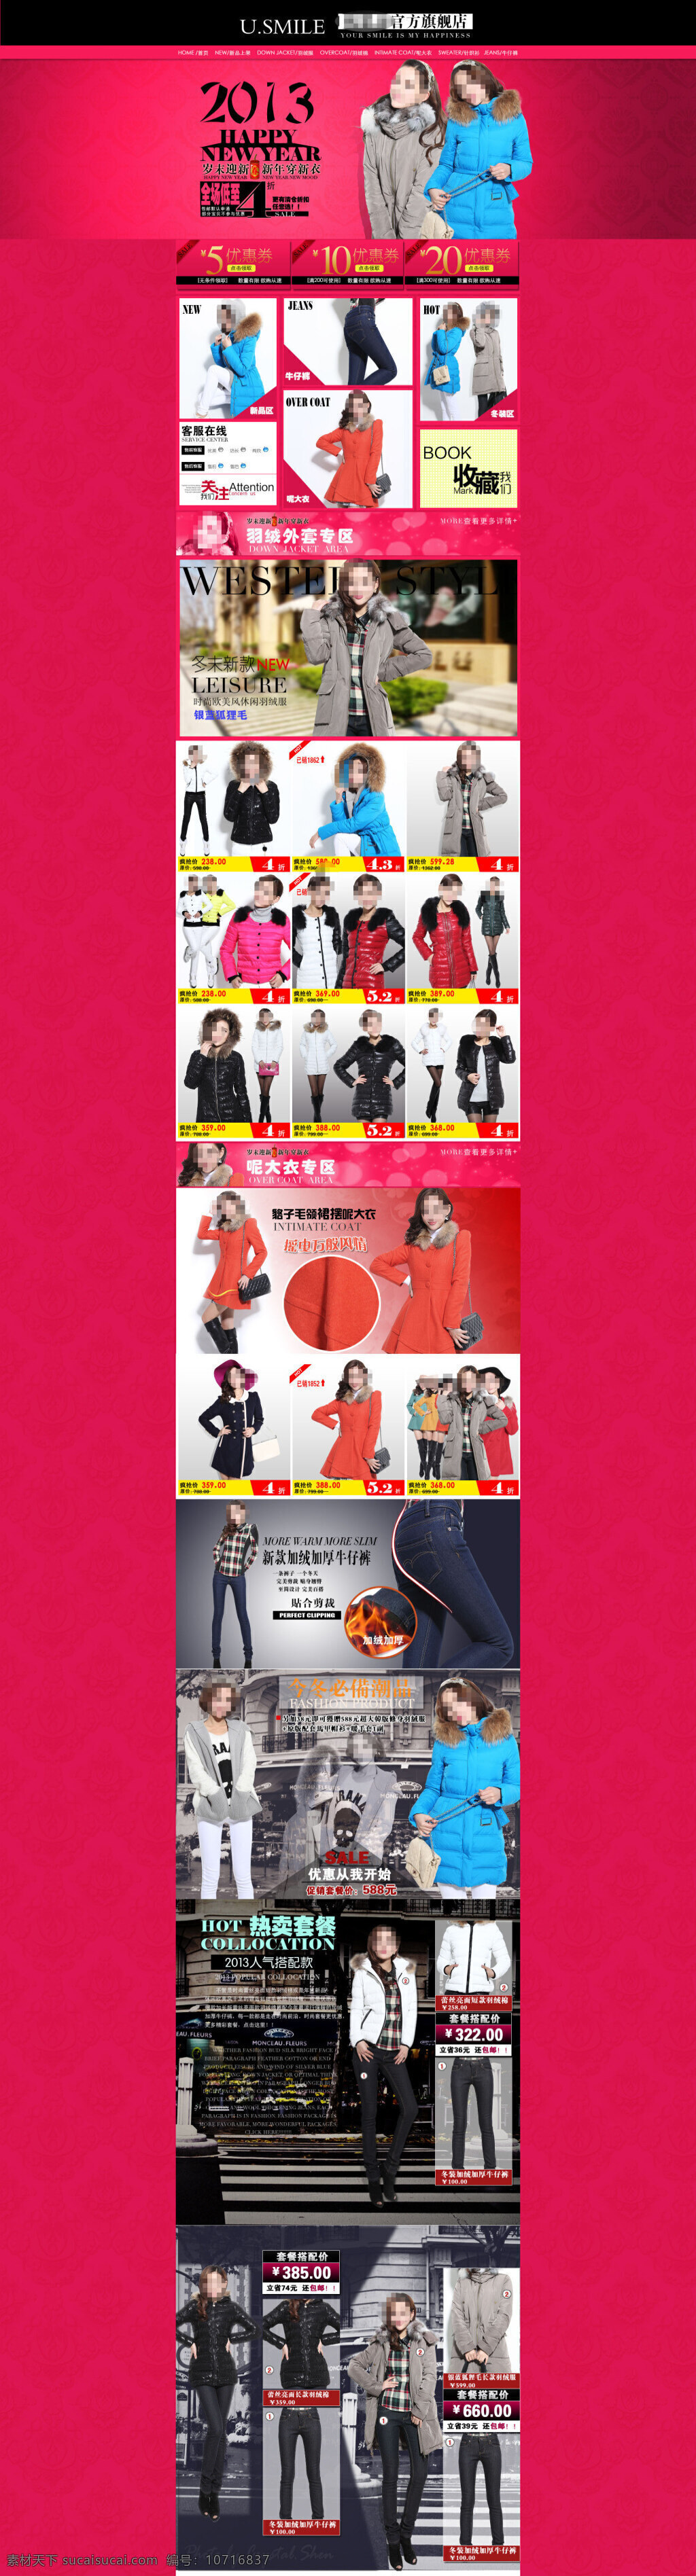 冬季 女士 服装 促销 海报 淘宝 活动 店铺 展示 首页大图海报 红色